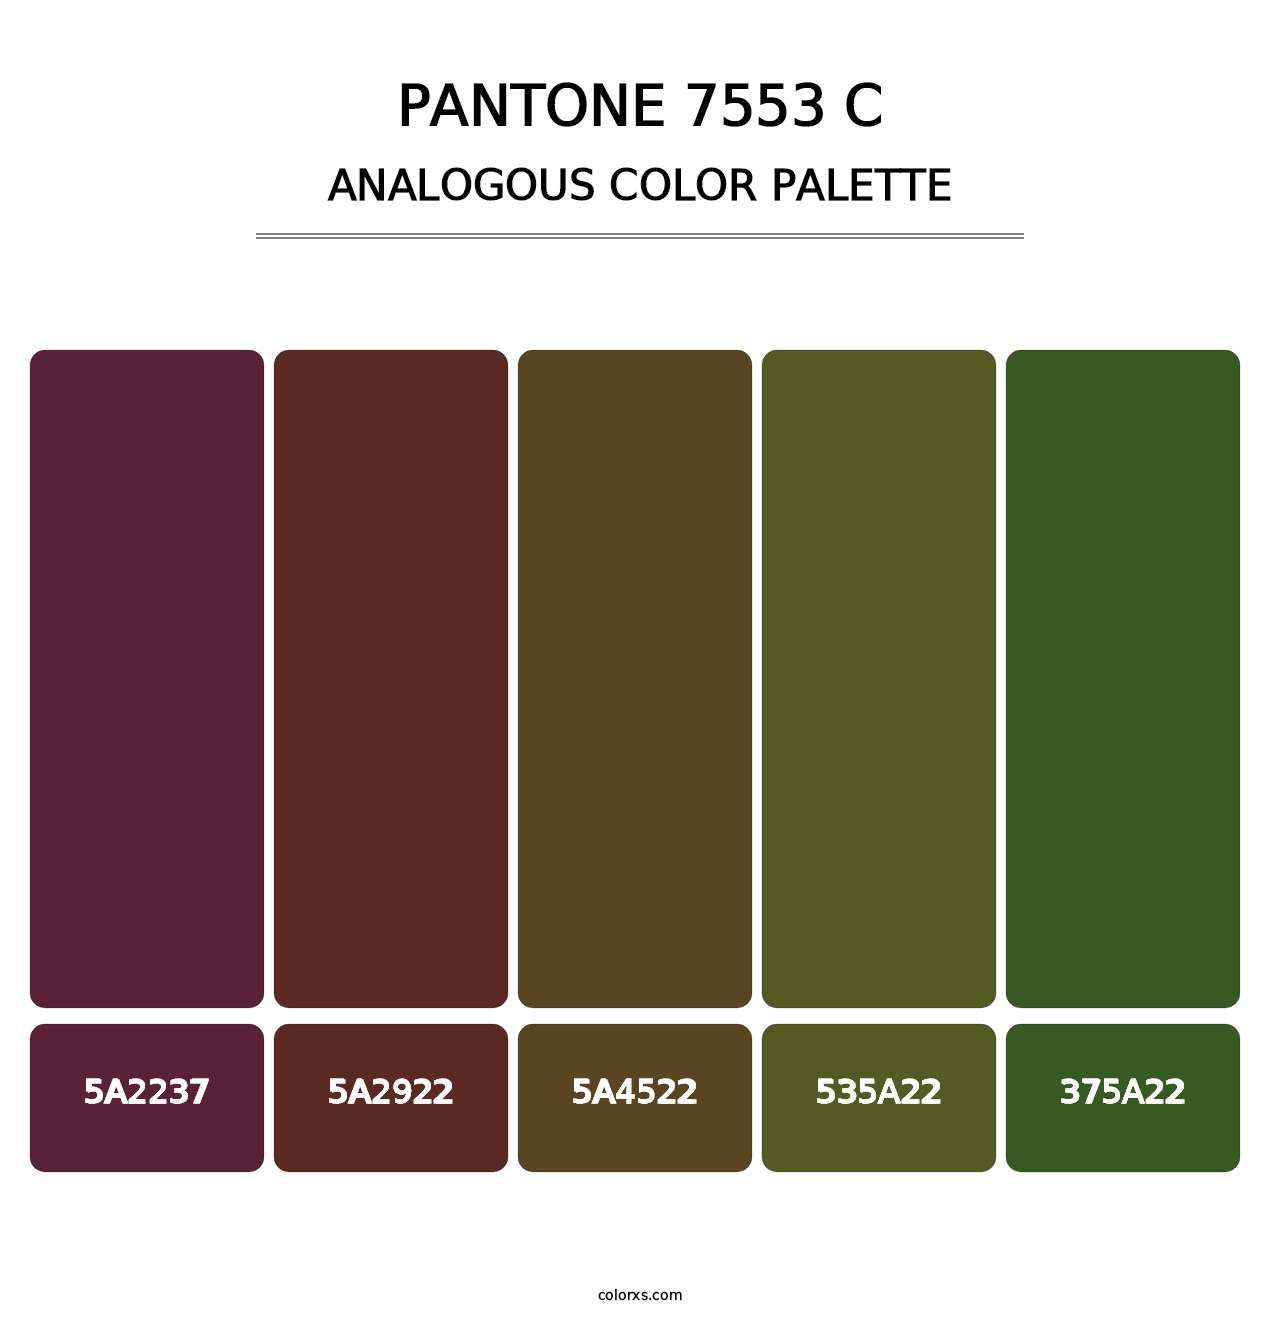 PANTONE 7553 C - Analogous Color Palette